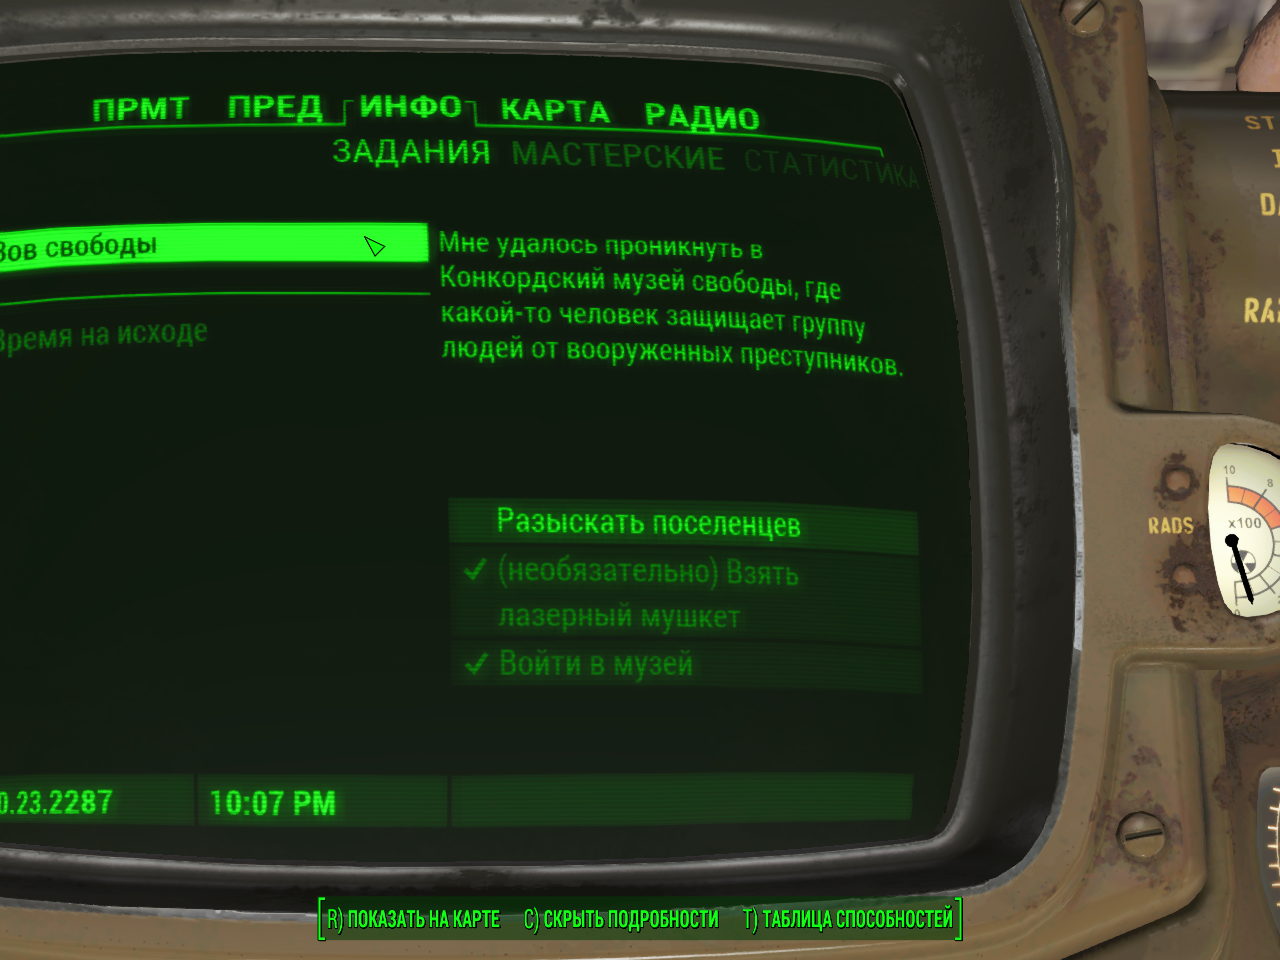 Fallout 4 зов свободы не выполняется фото 47